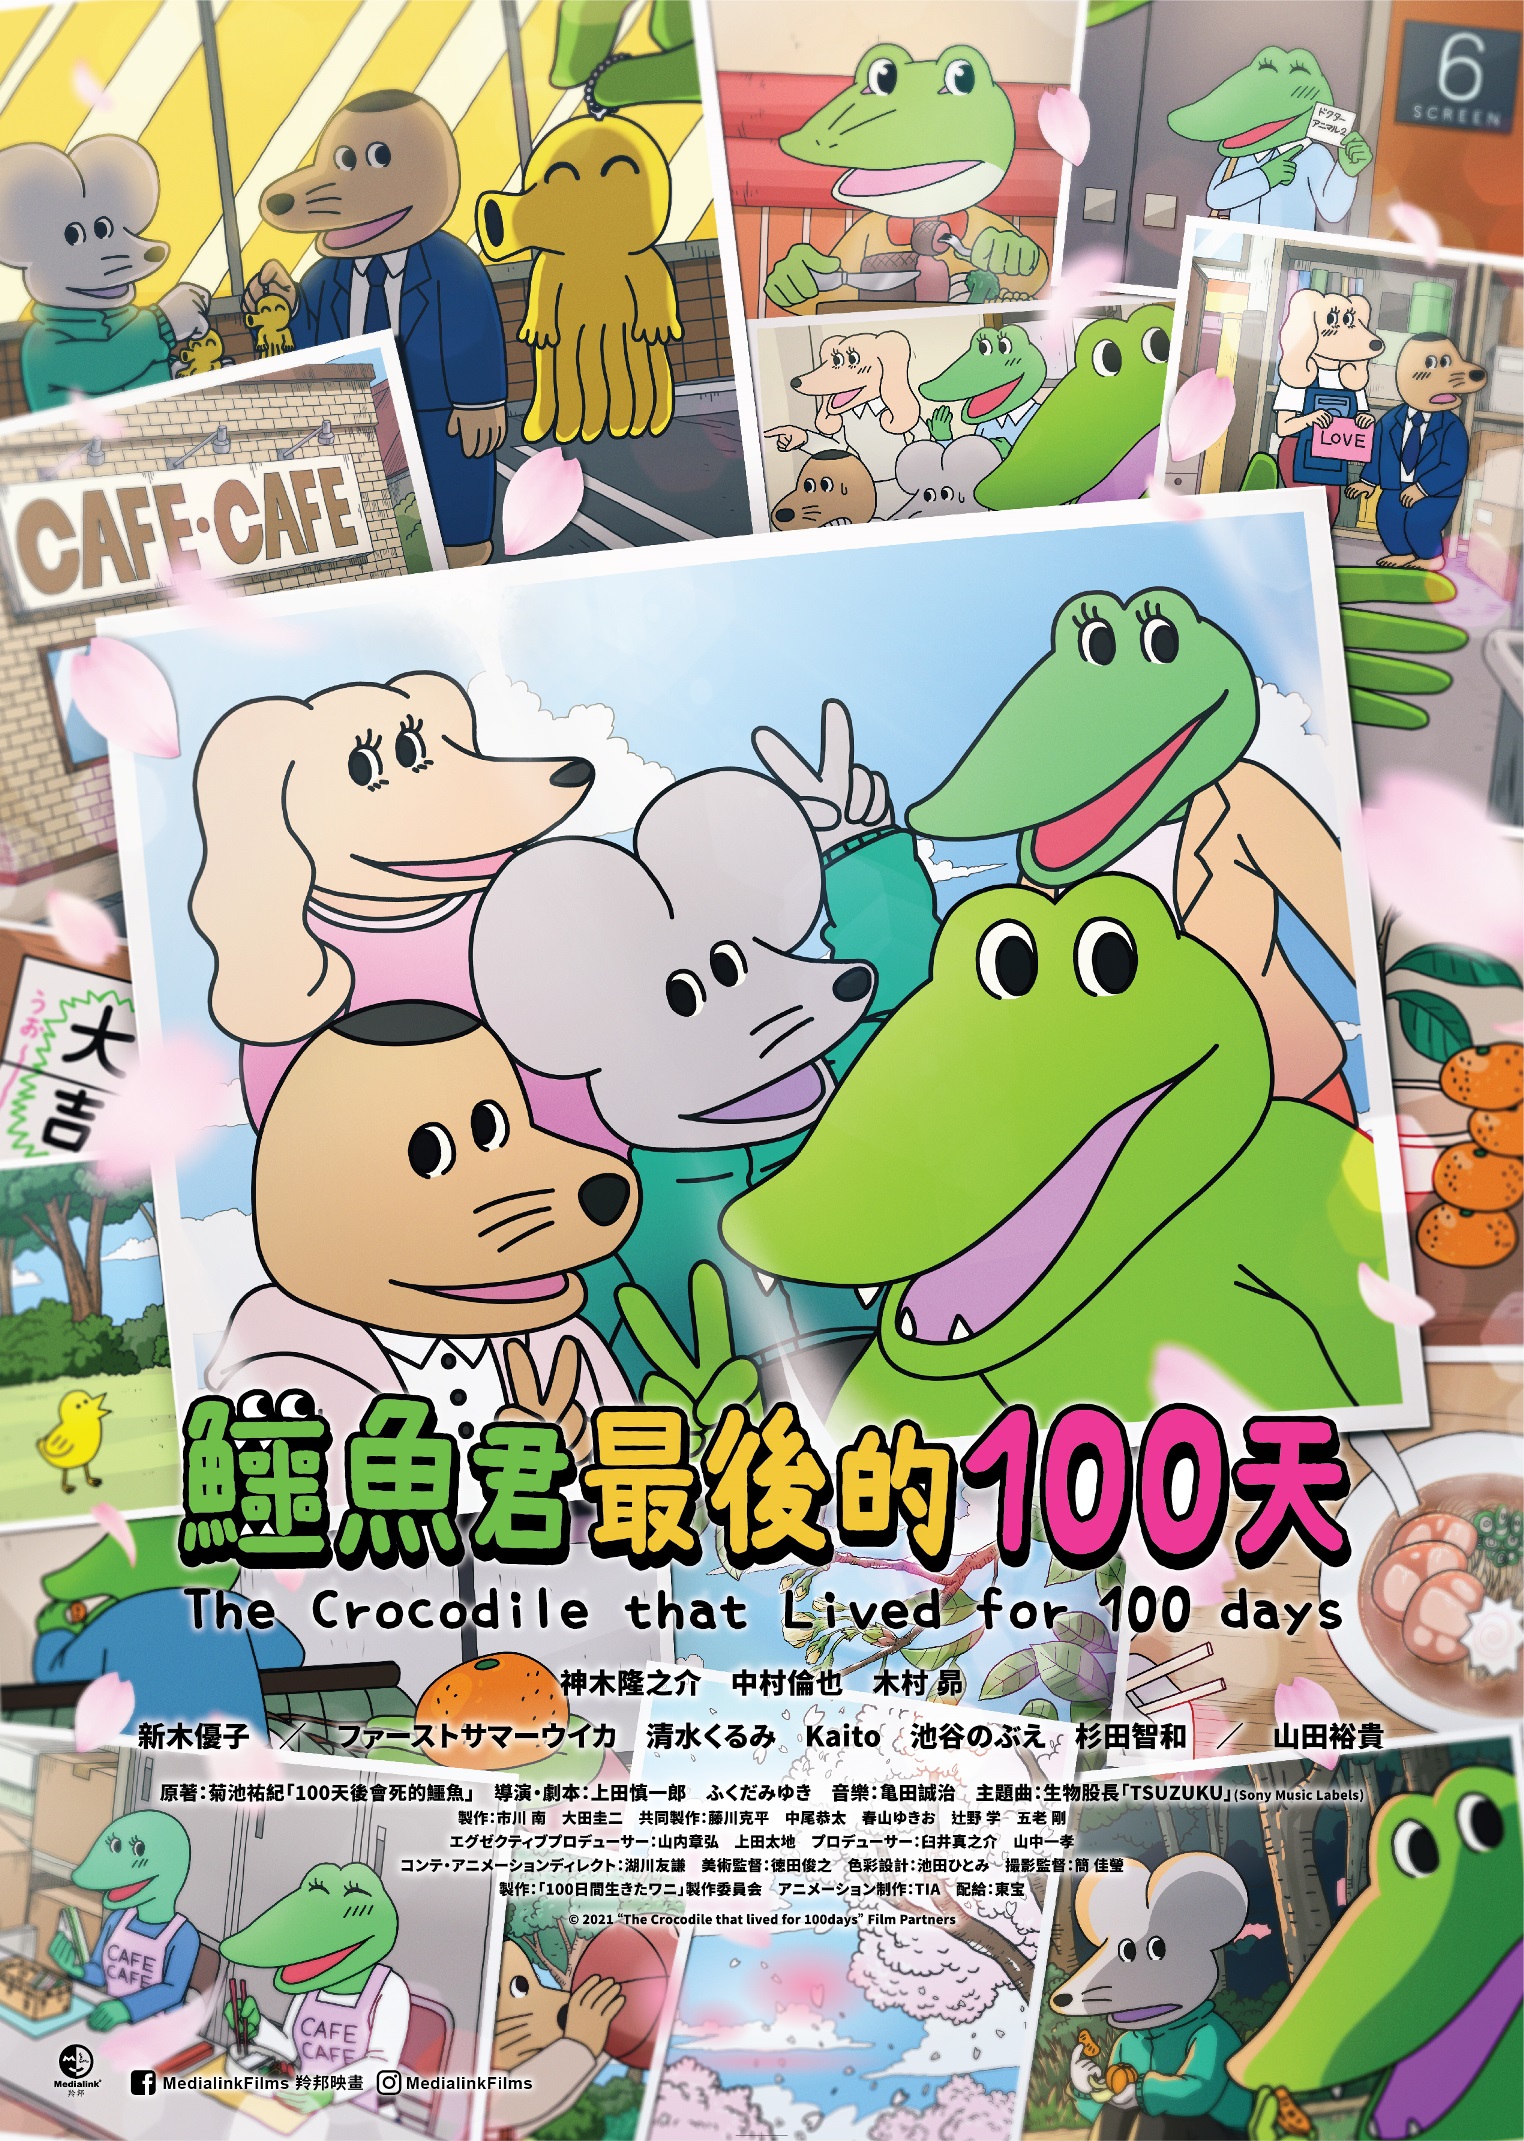 羚邦news 鳄鱼君最后的100天 香港版海报公开 日本爆红twitter 漫画改编 动画导演